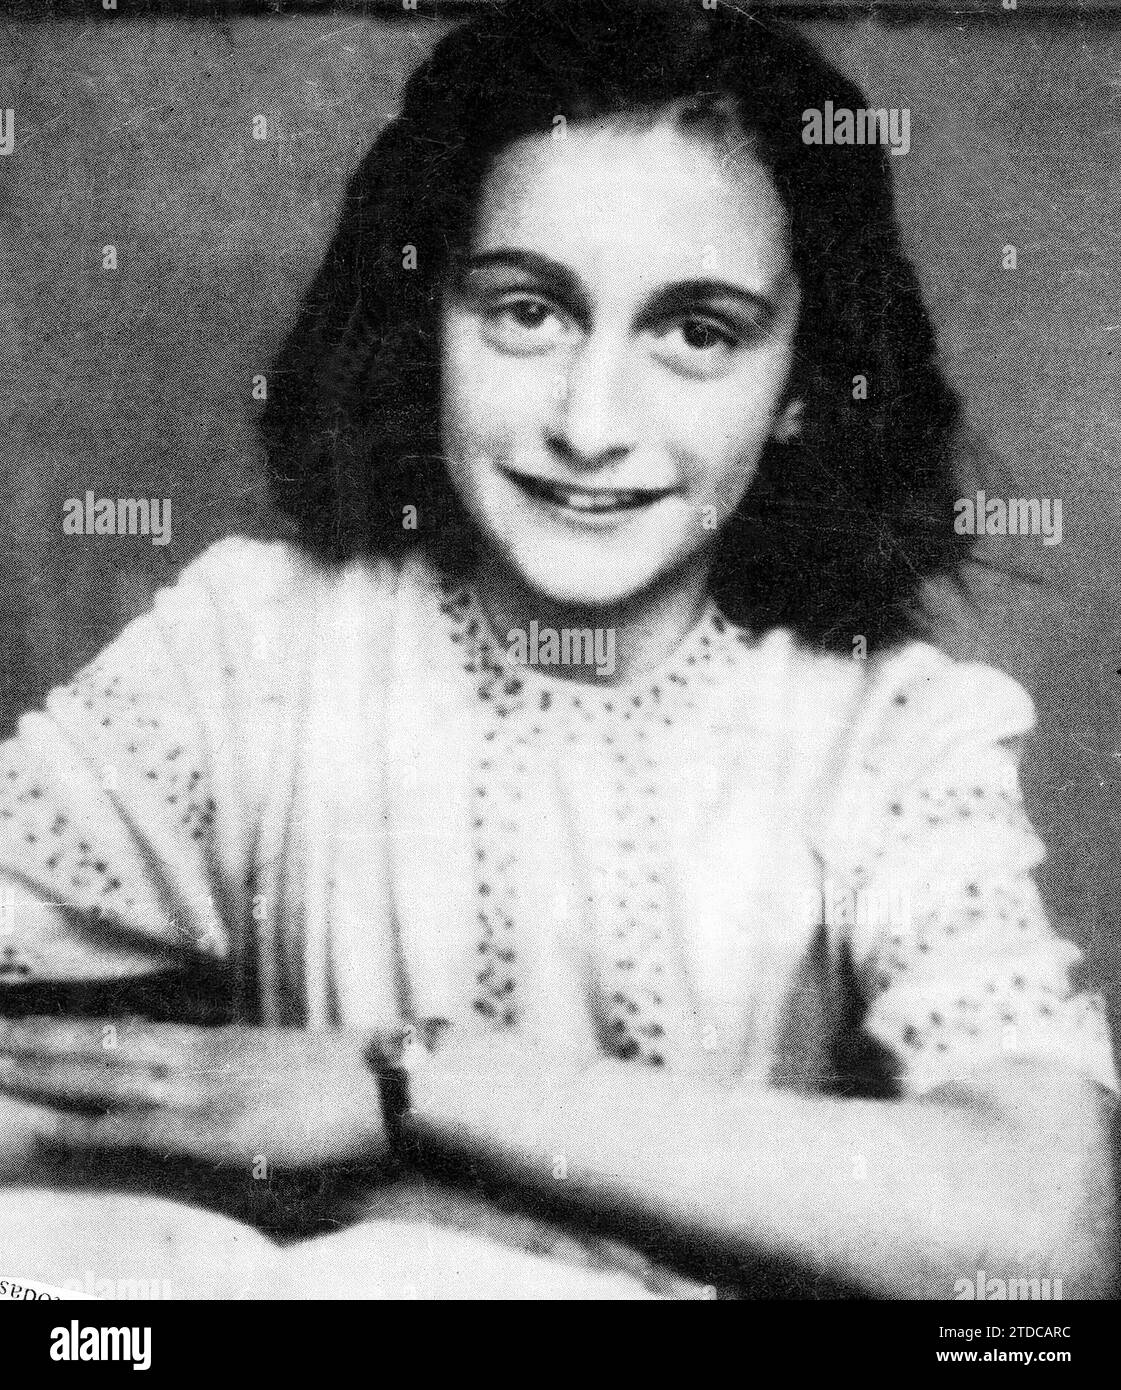 12/31/1939. Anne Frank est montrée souriante sur la photo malgré le confinement qu'elle a connu pour échapper aux nazis. Crédit : Album / Archivo ABC Banque D'Images